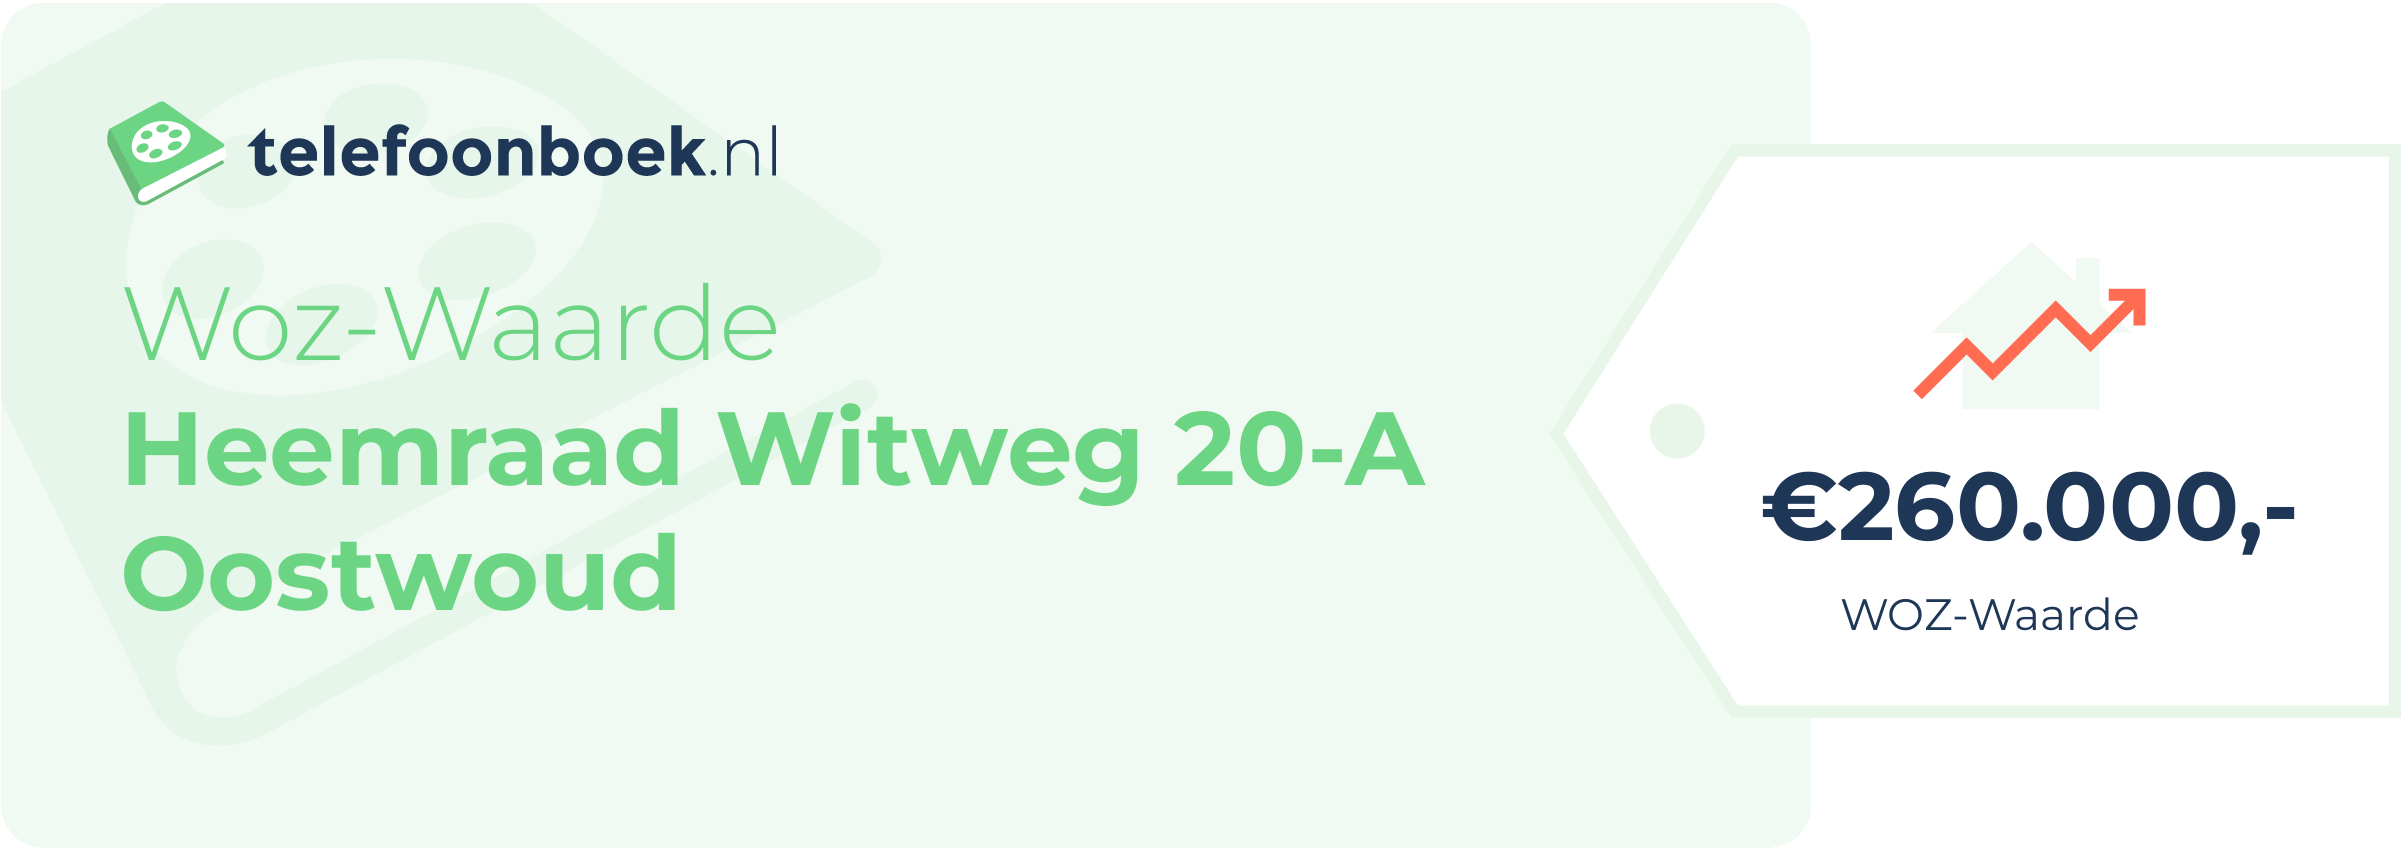 WOZ-waarde Heemraad Witweg 20-A Oostwoud